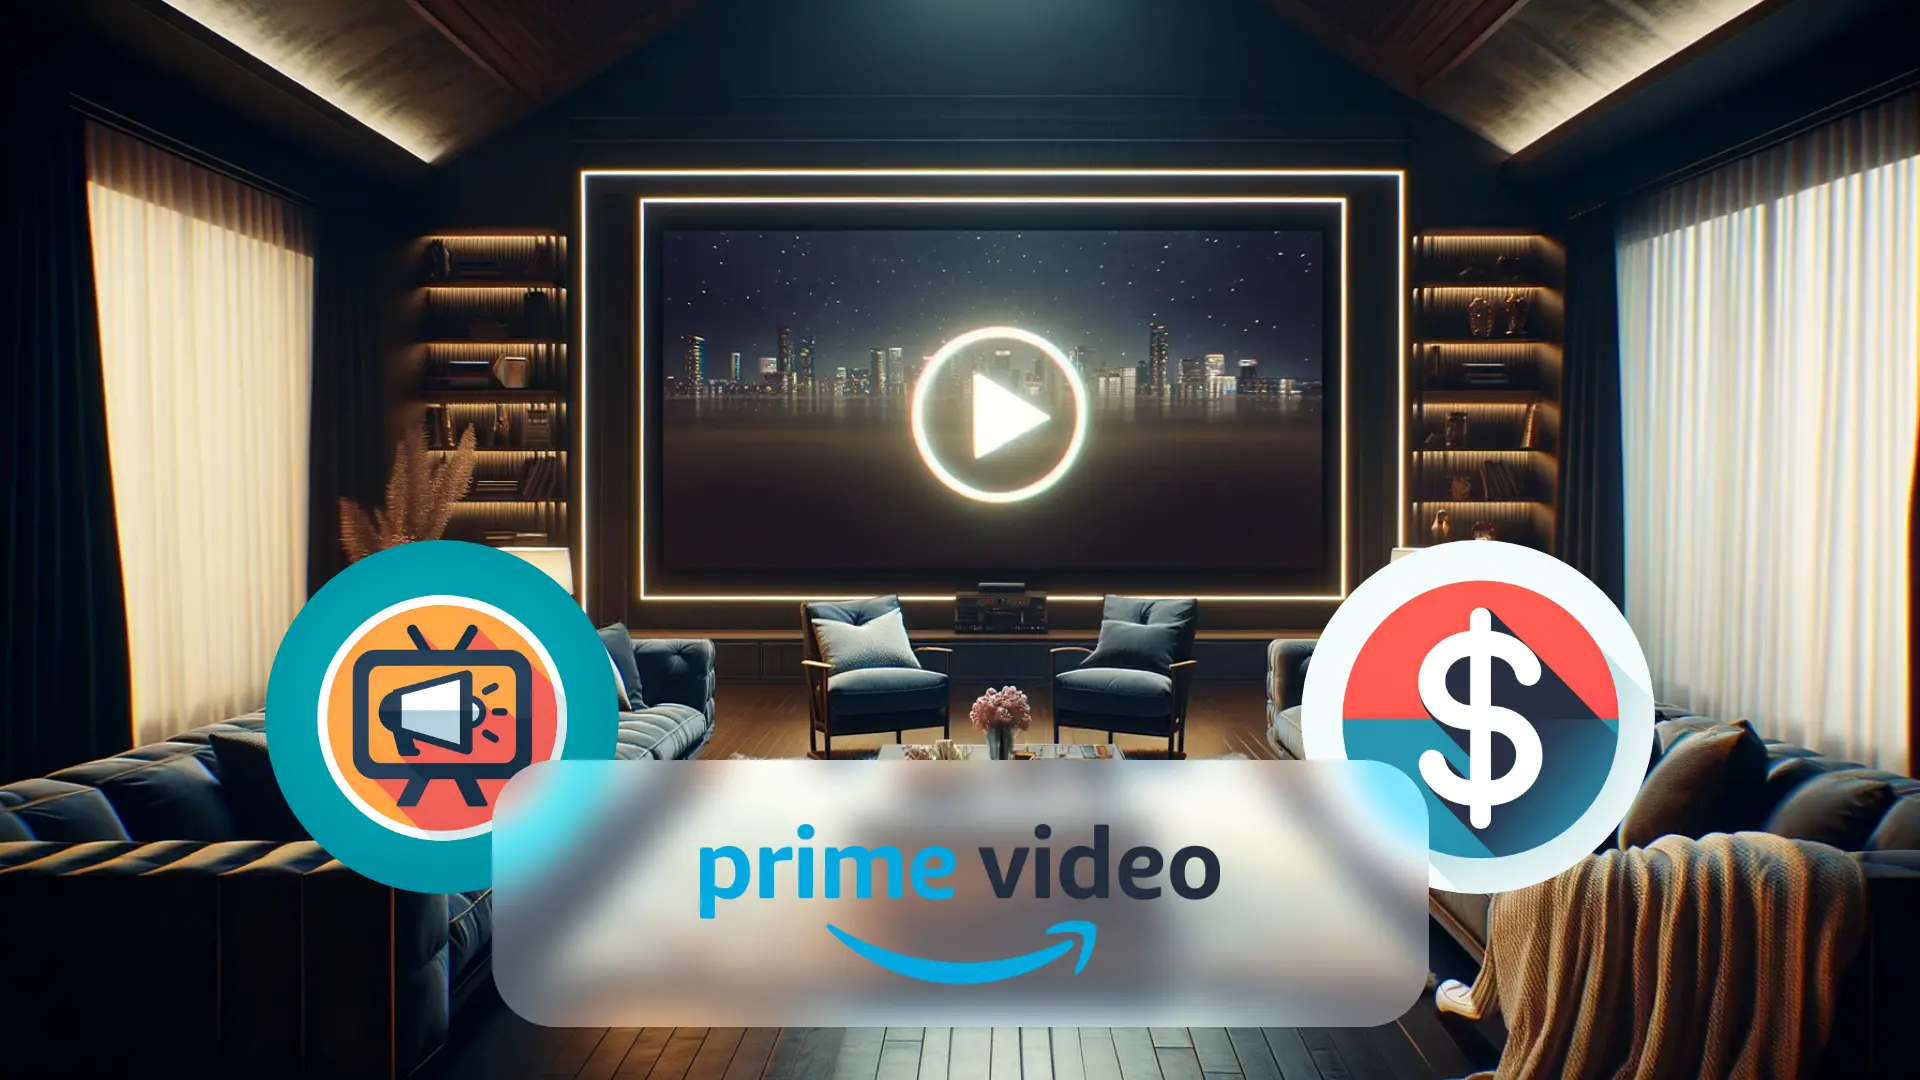 Titelbild zum Beitrag, das Amazon Prime demnächst ebenfalls in ihr bereits kostenpflichtiges Programm, Werbung einbinden wird.